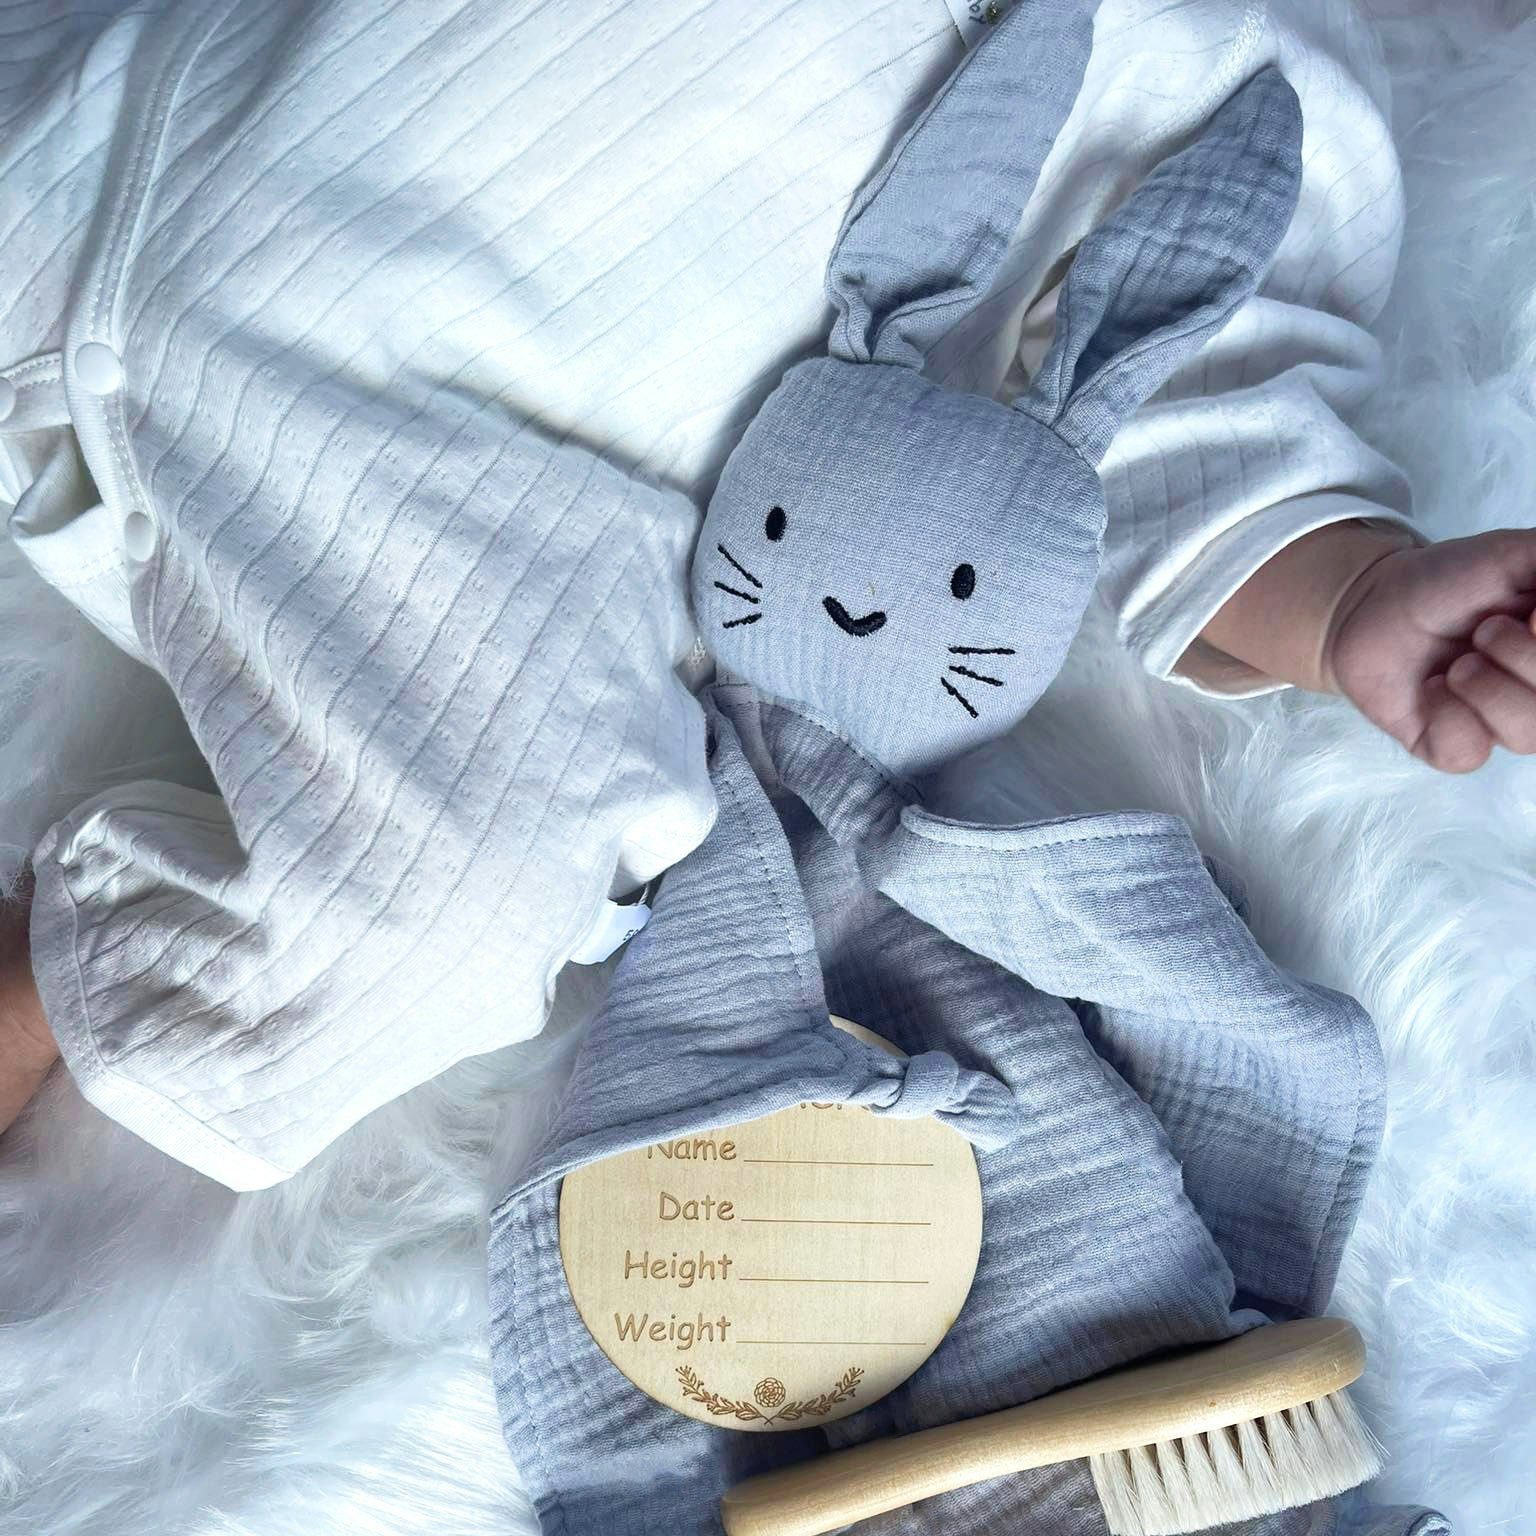 Angel's Baby Neugeborenen-Geschenkset Baby Geschenkset und niedlichem mit und (Set, 4 Grußkarte) Geschenkverpackung teilig Design Schnullerkette Blau in mit Schnuffeltuch